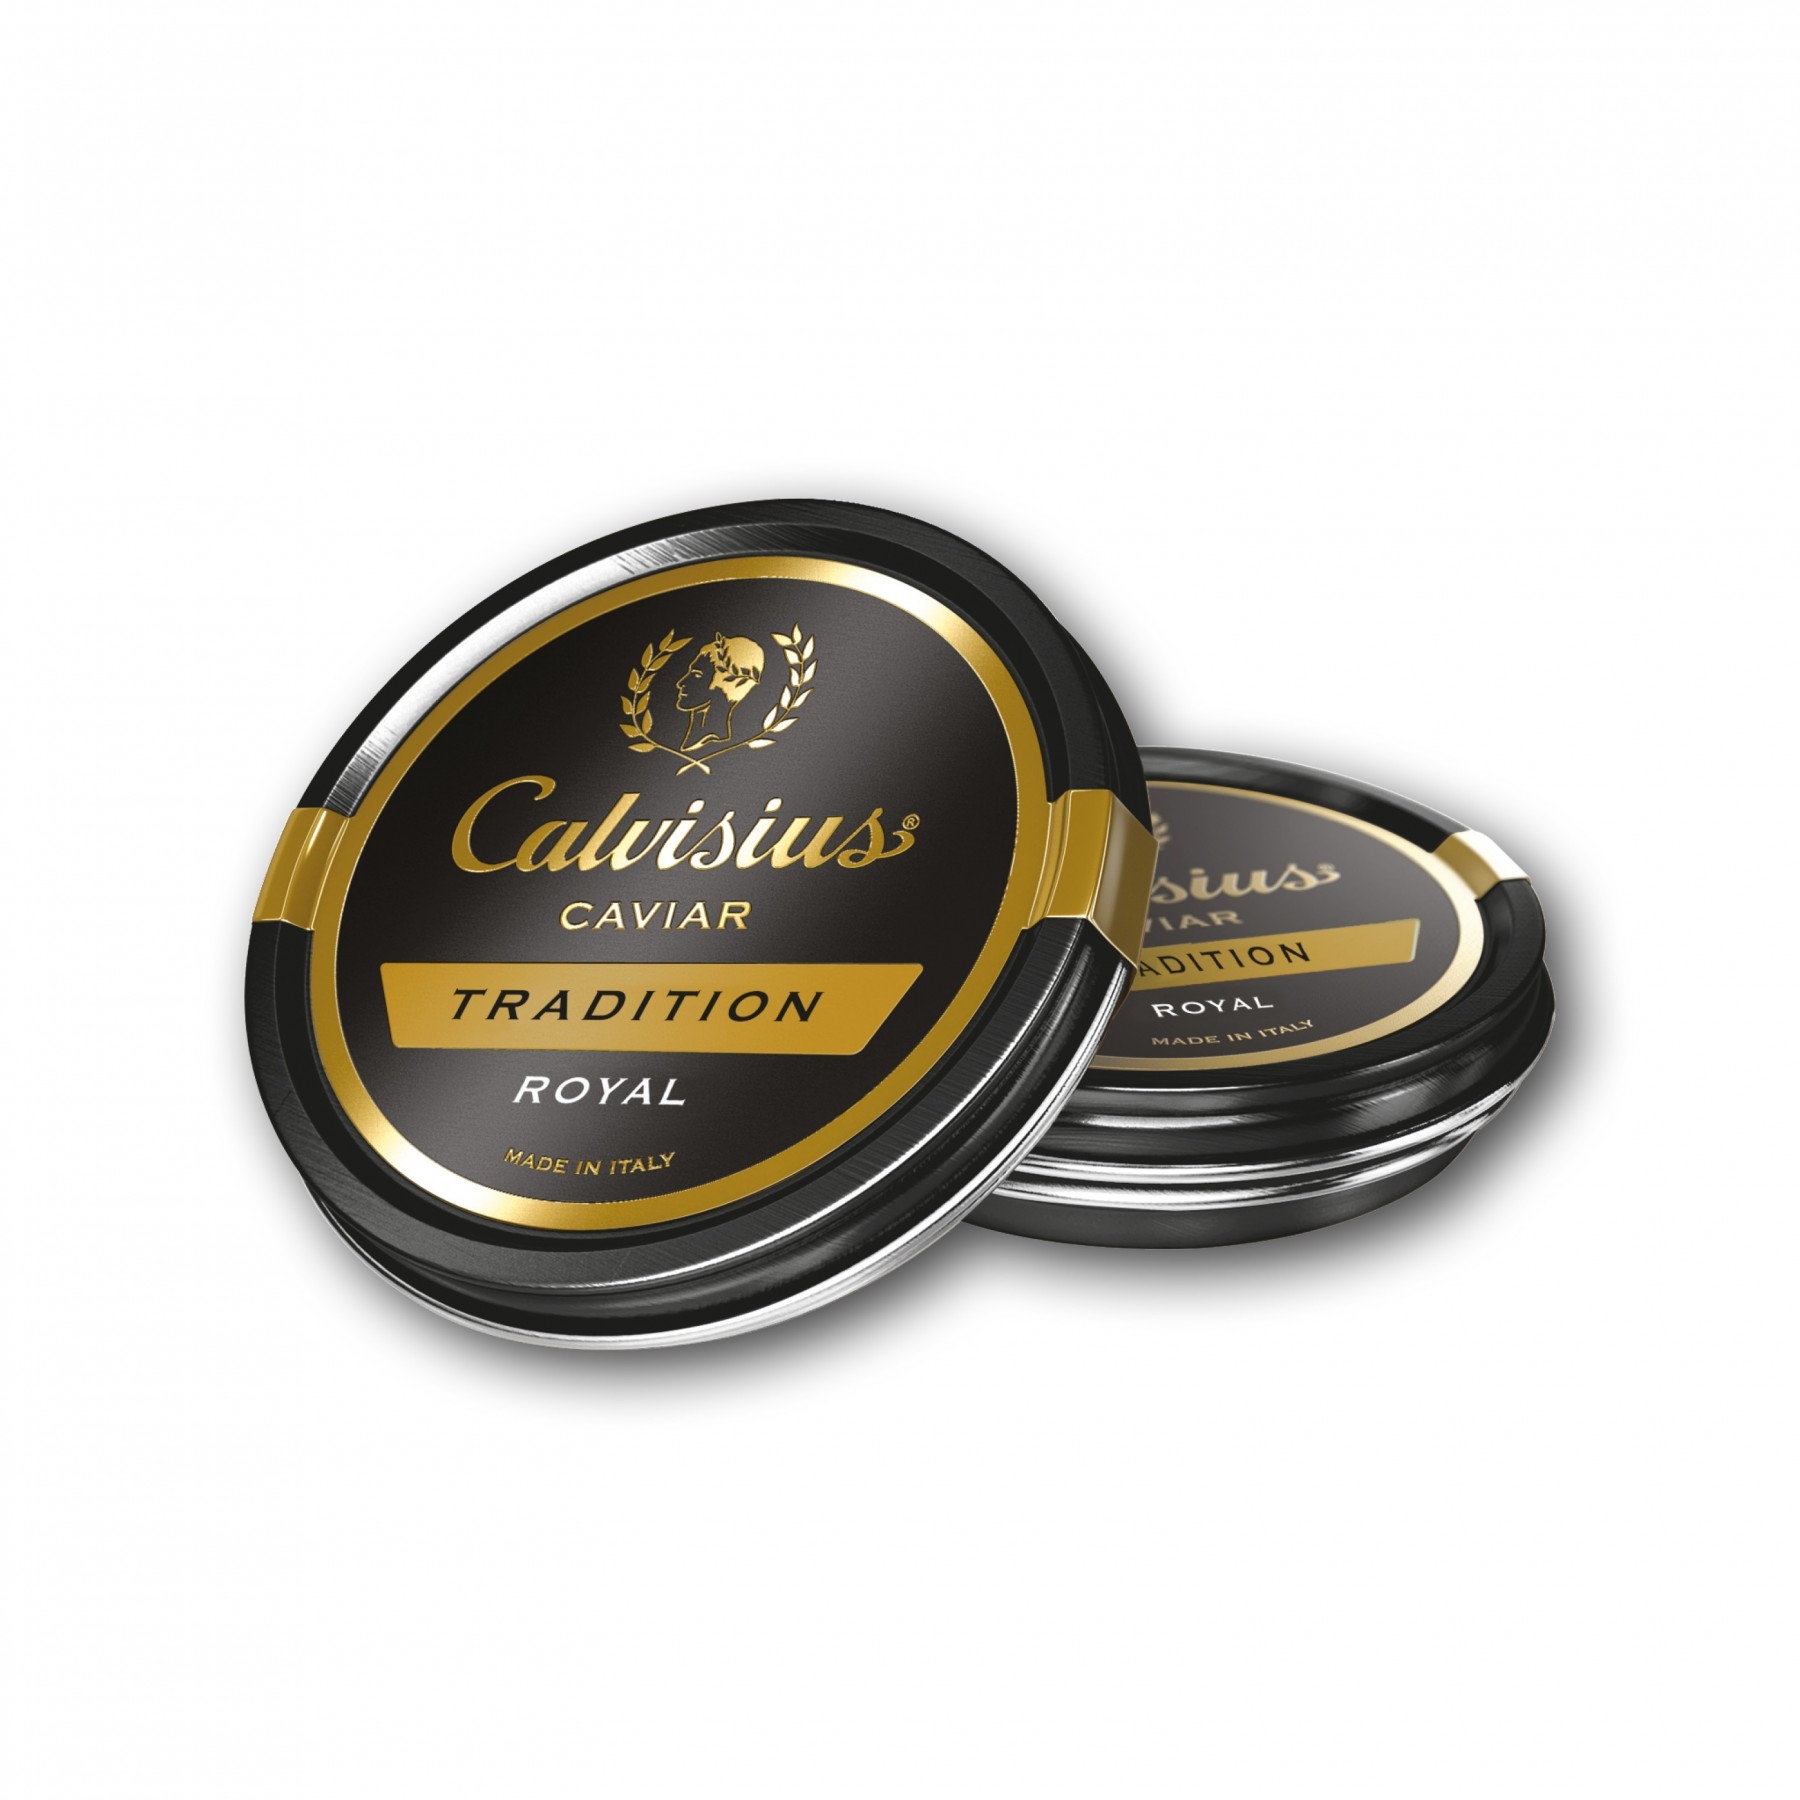 Calvisius Caviar Tradition Royal